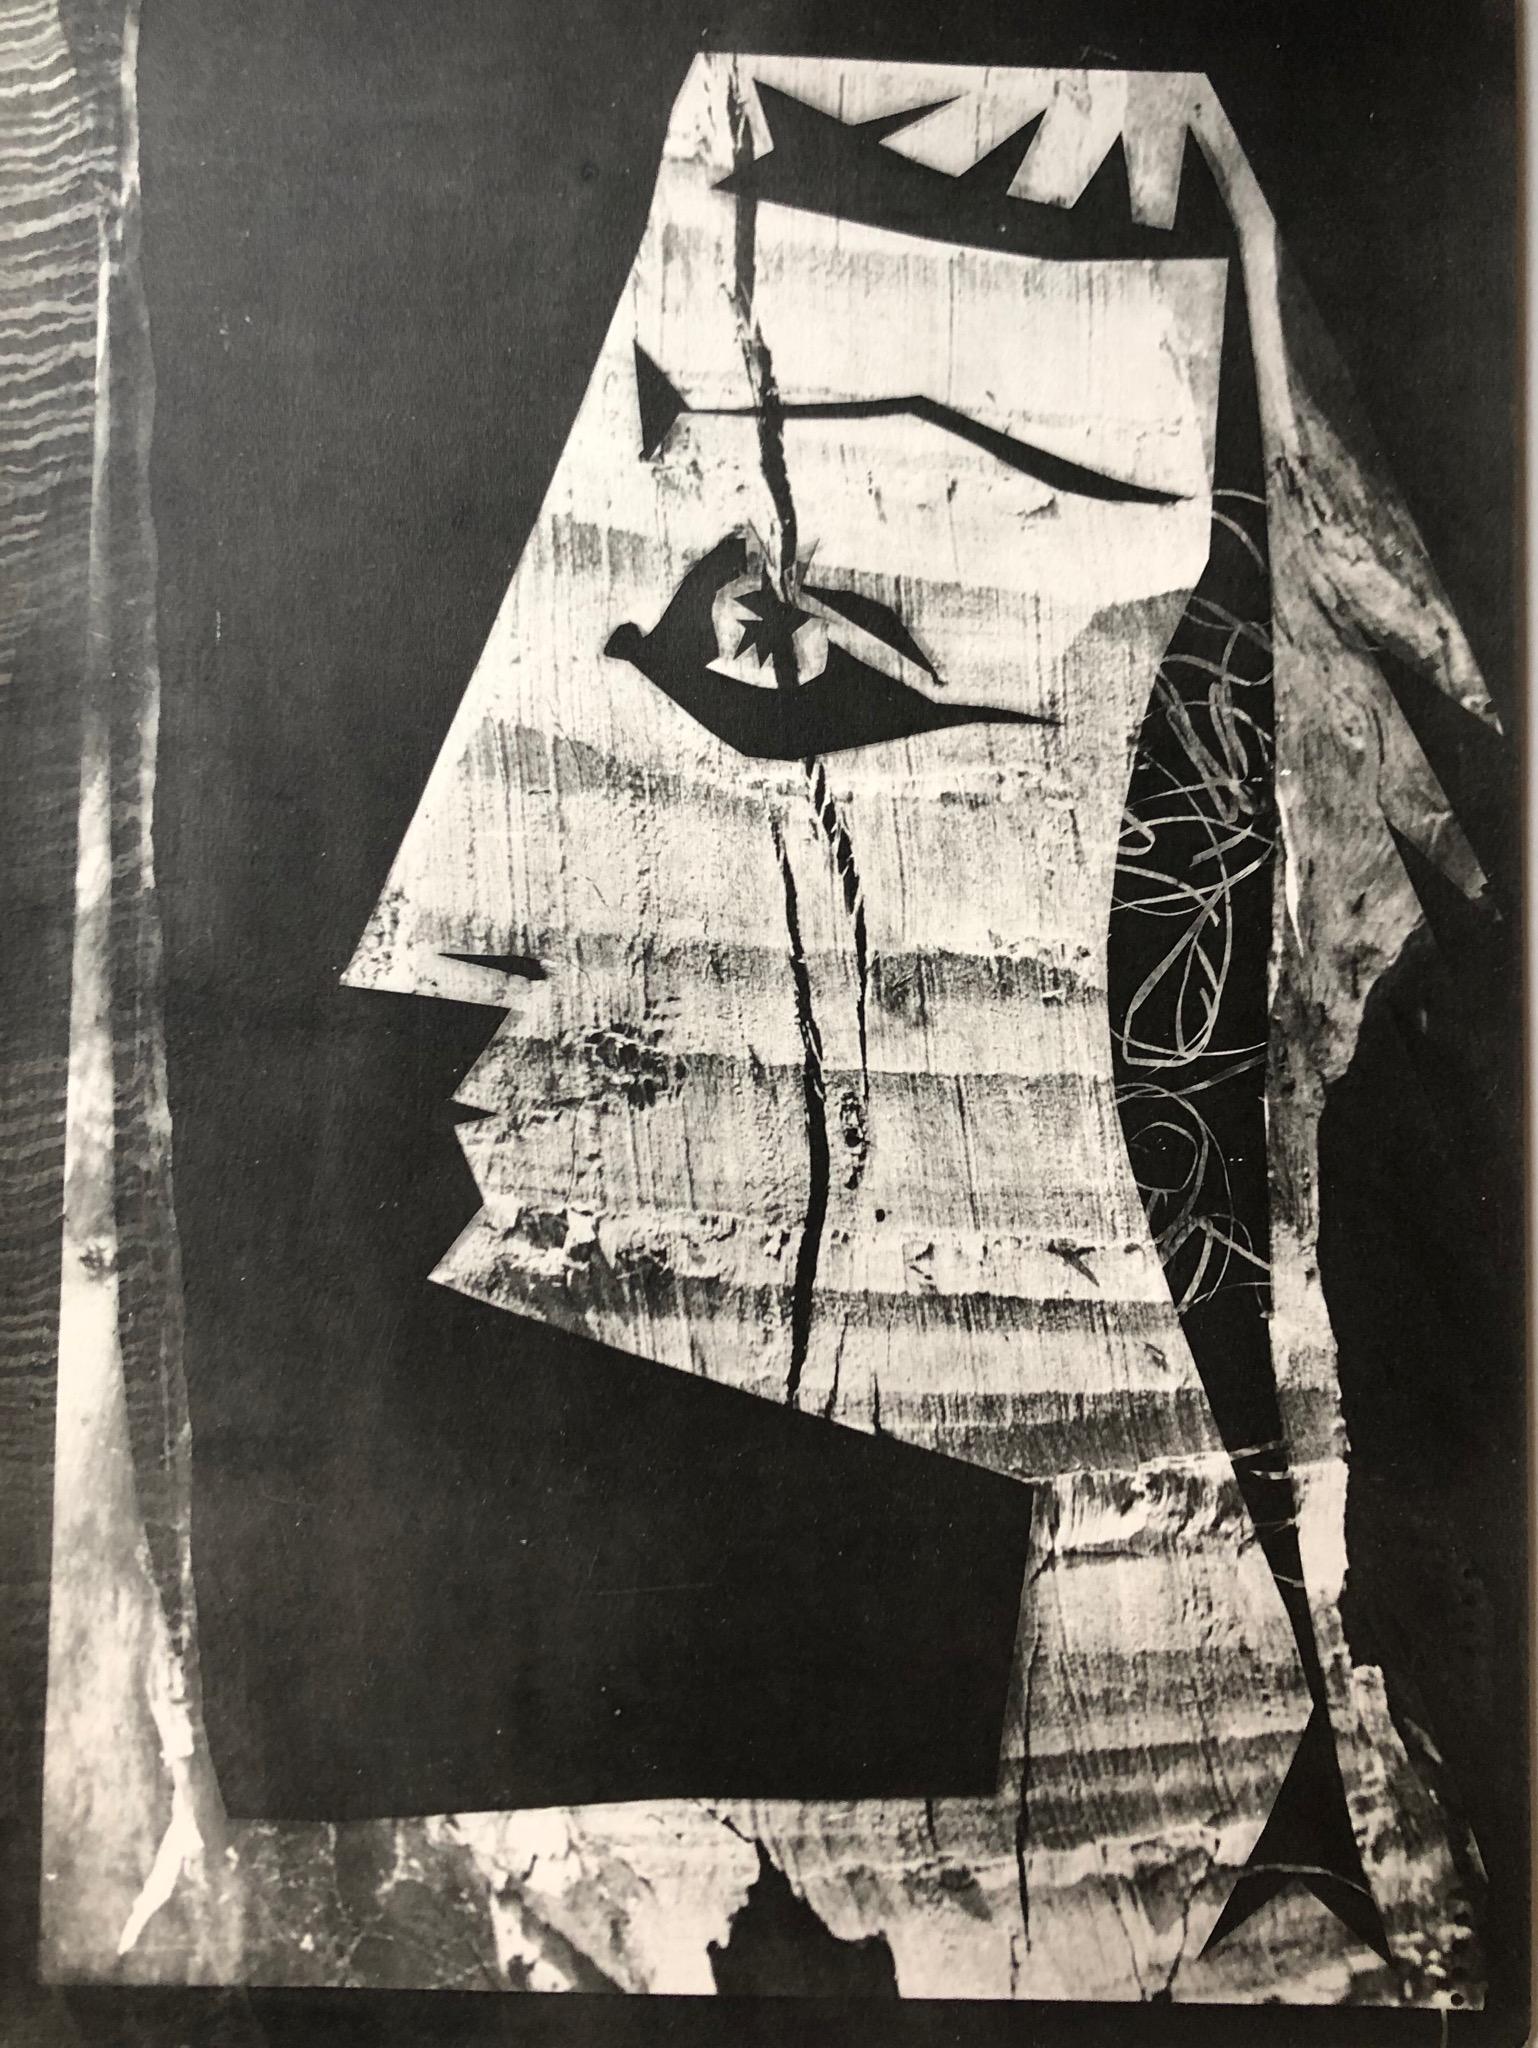 Abstract Print Pablo Picasso - Jacqueline au regard d'Oiseaux